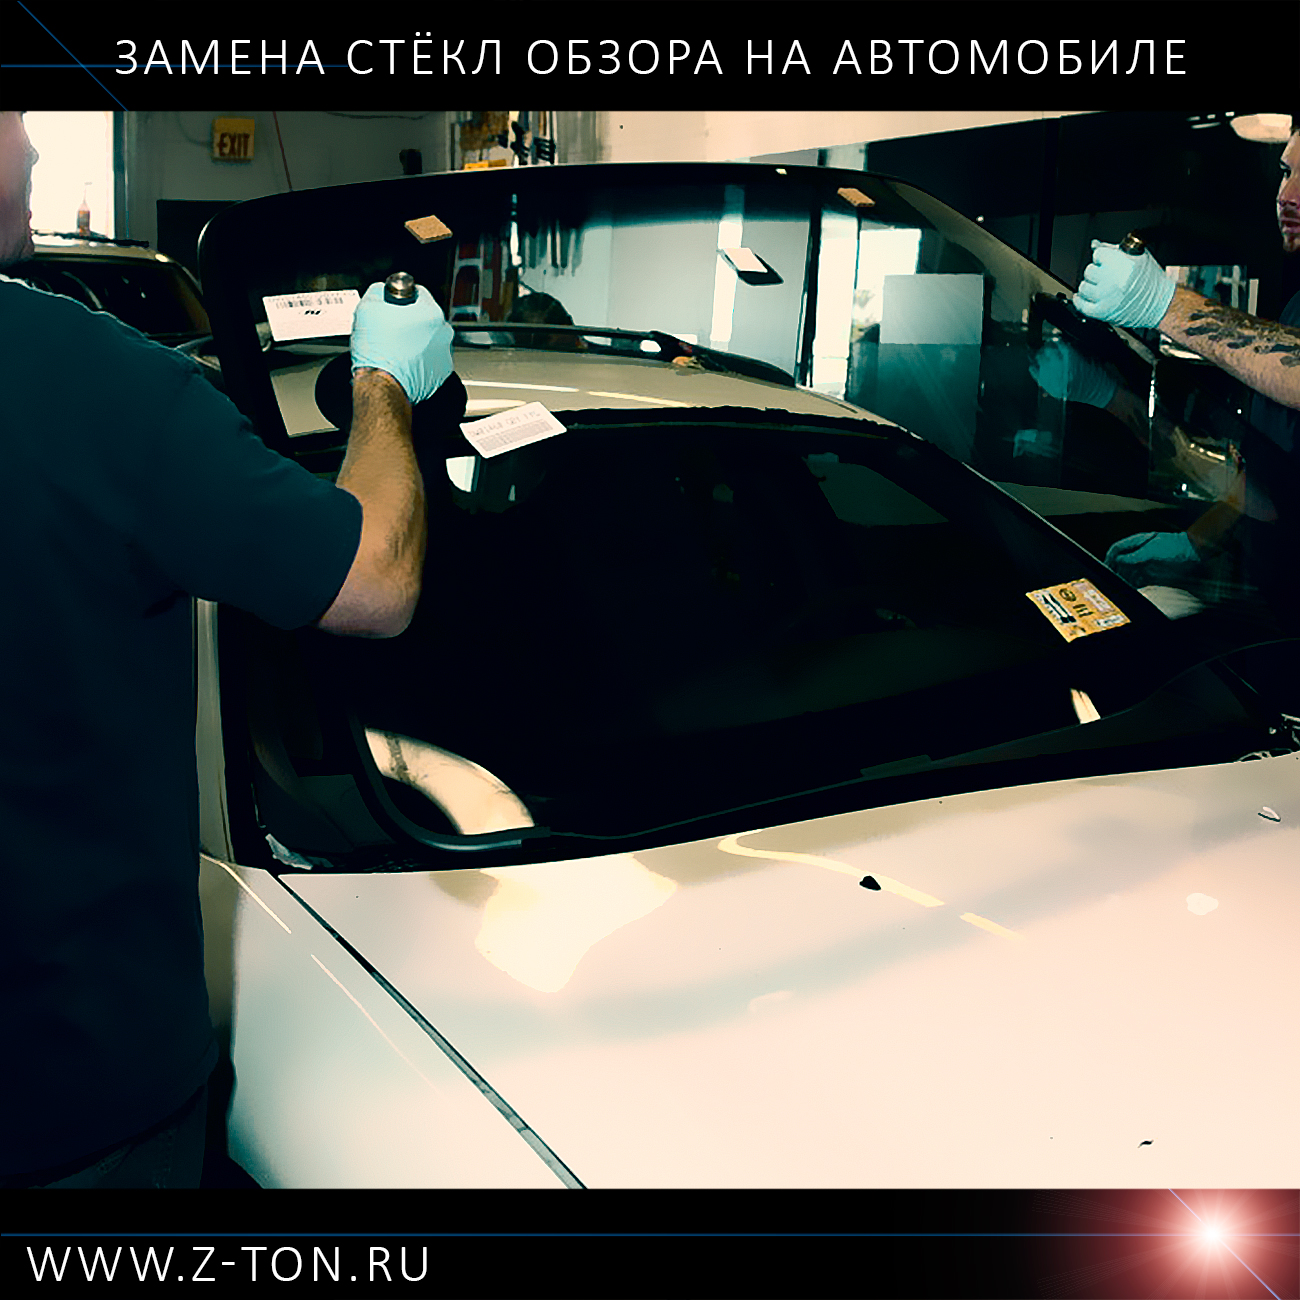 Замена лобового стекла автомобиля в Зеленограде